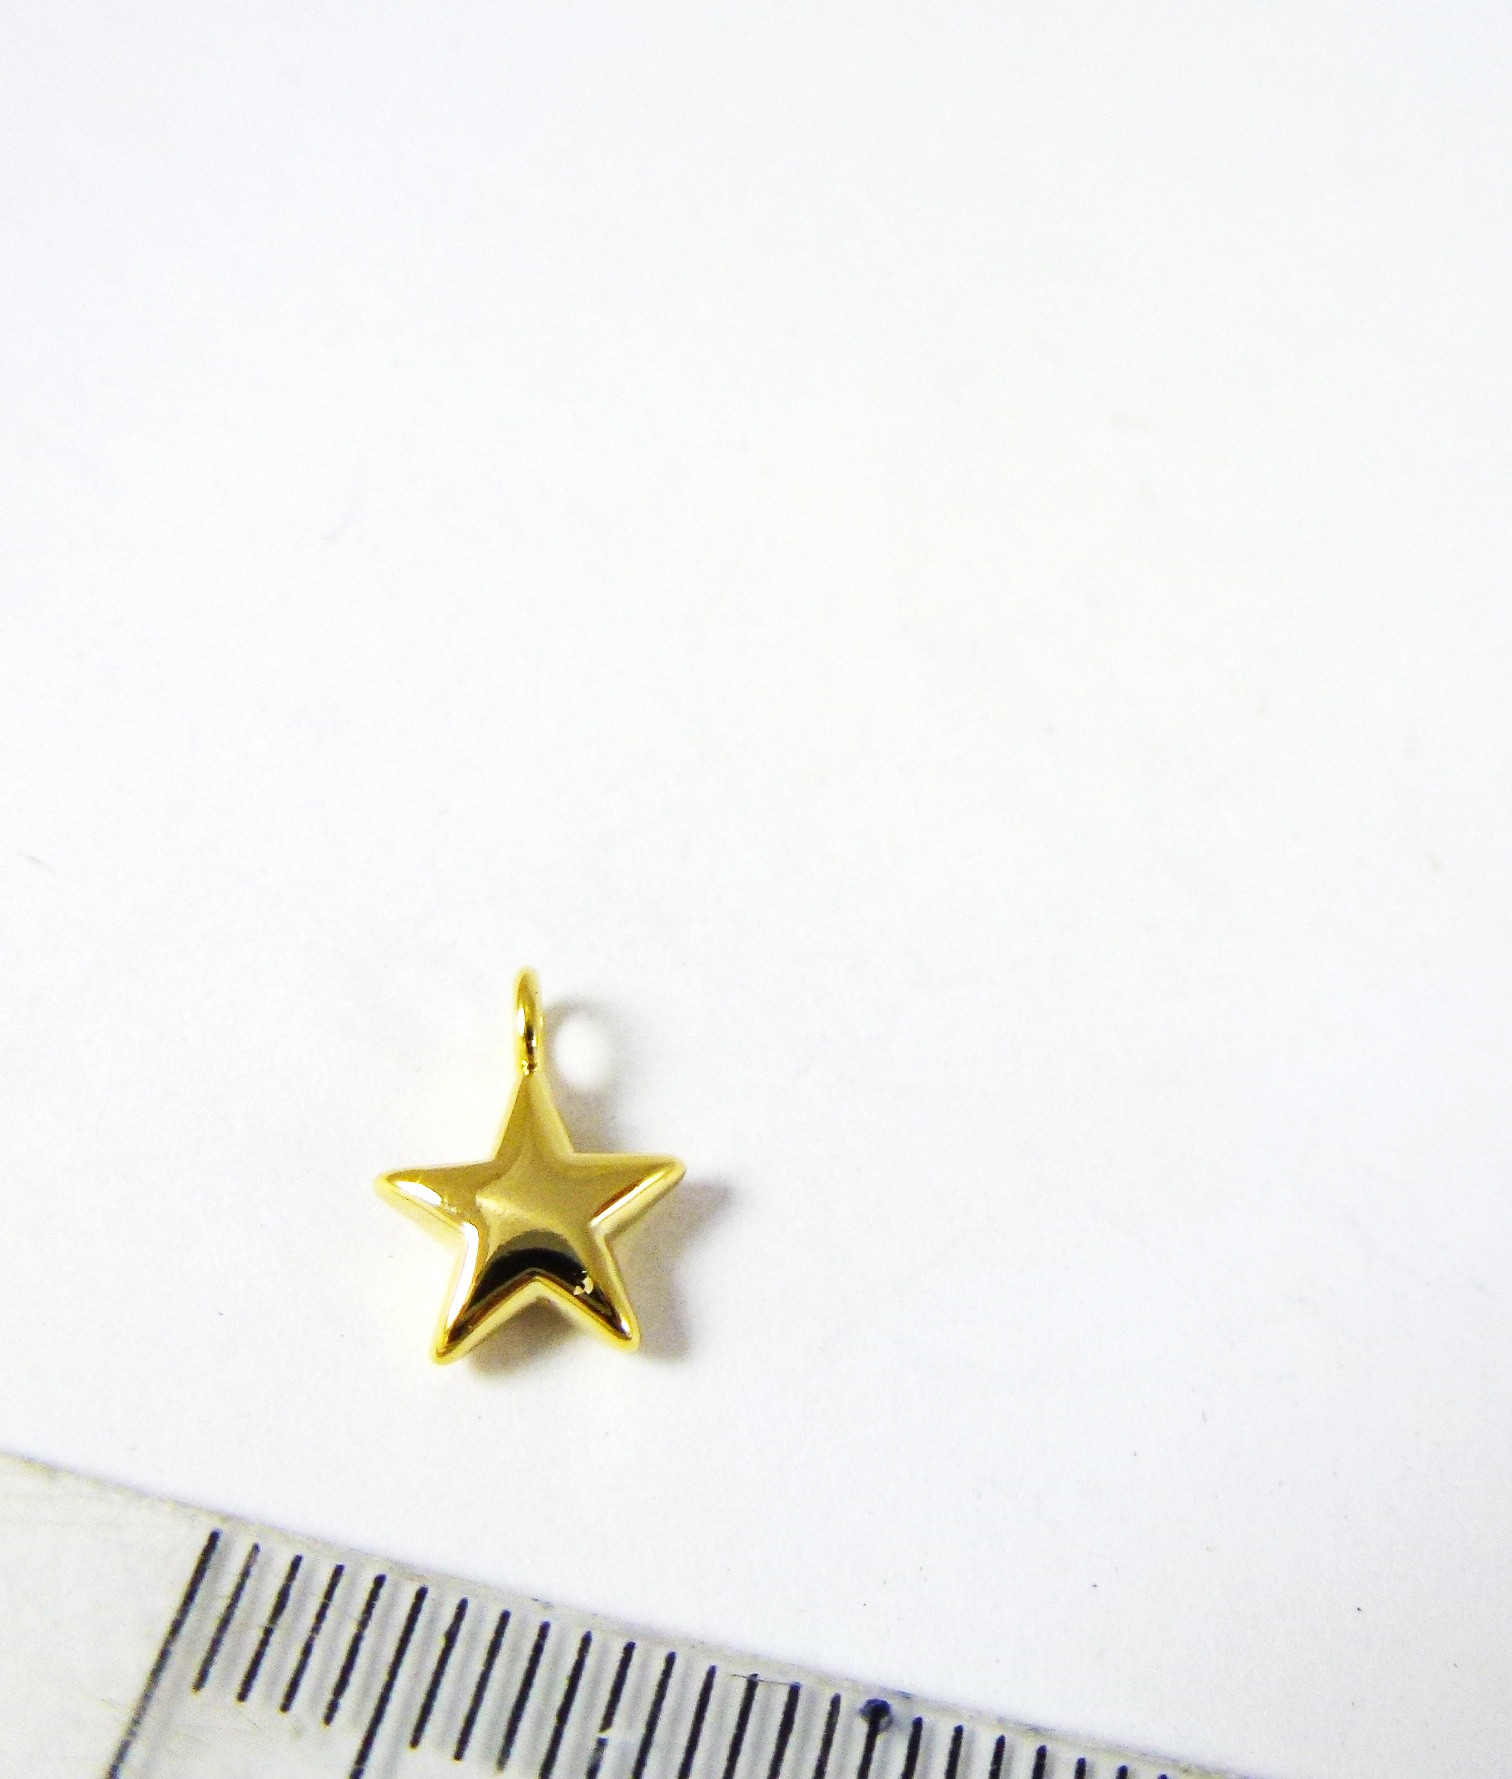 8mm銅鍍金色單孔星星